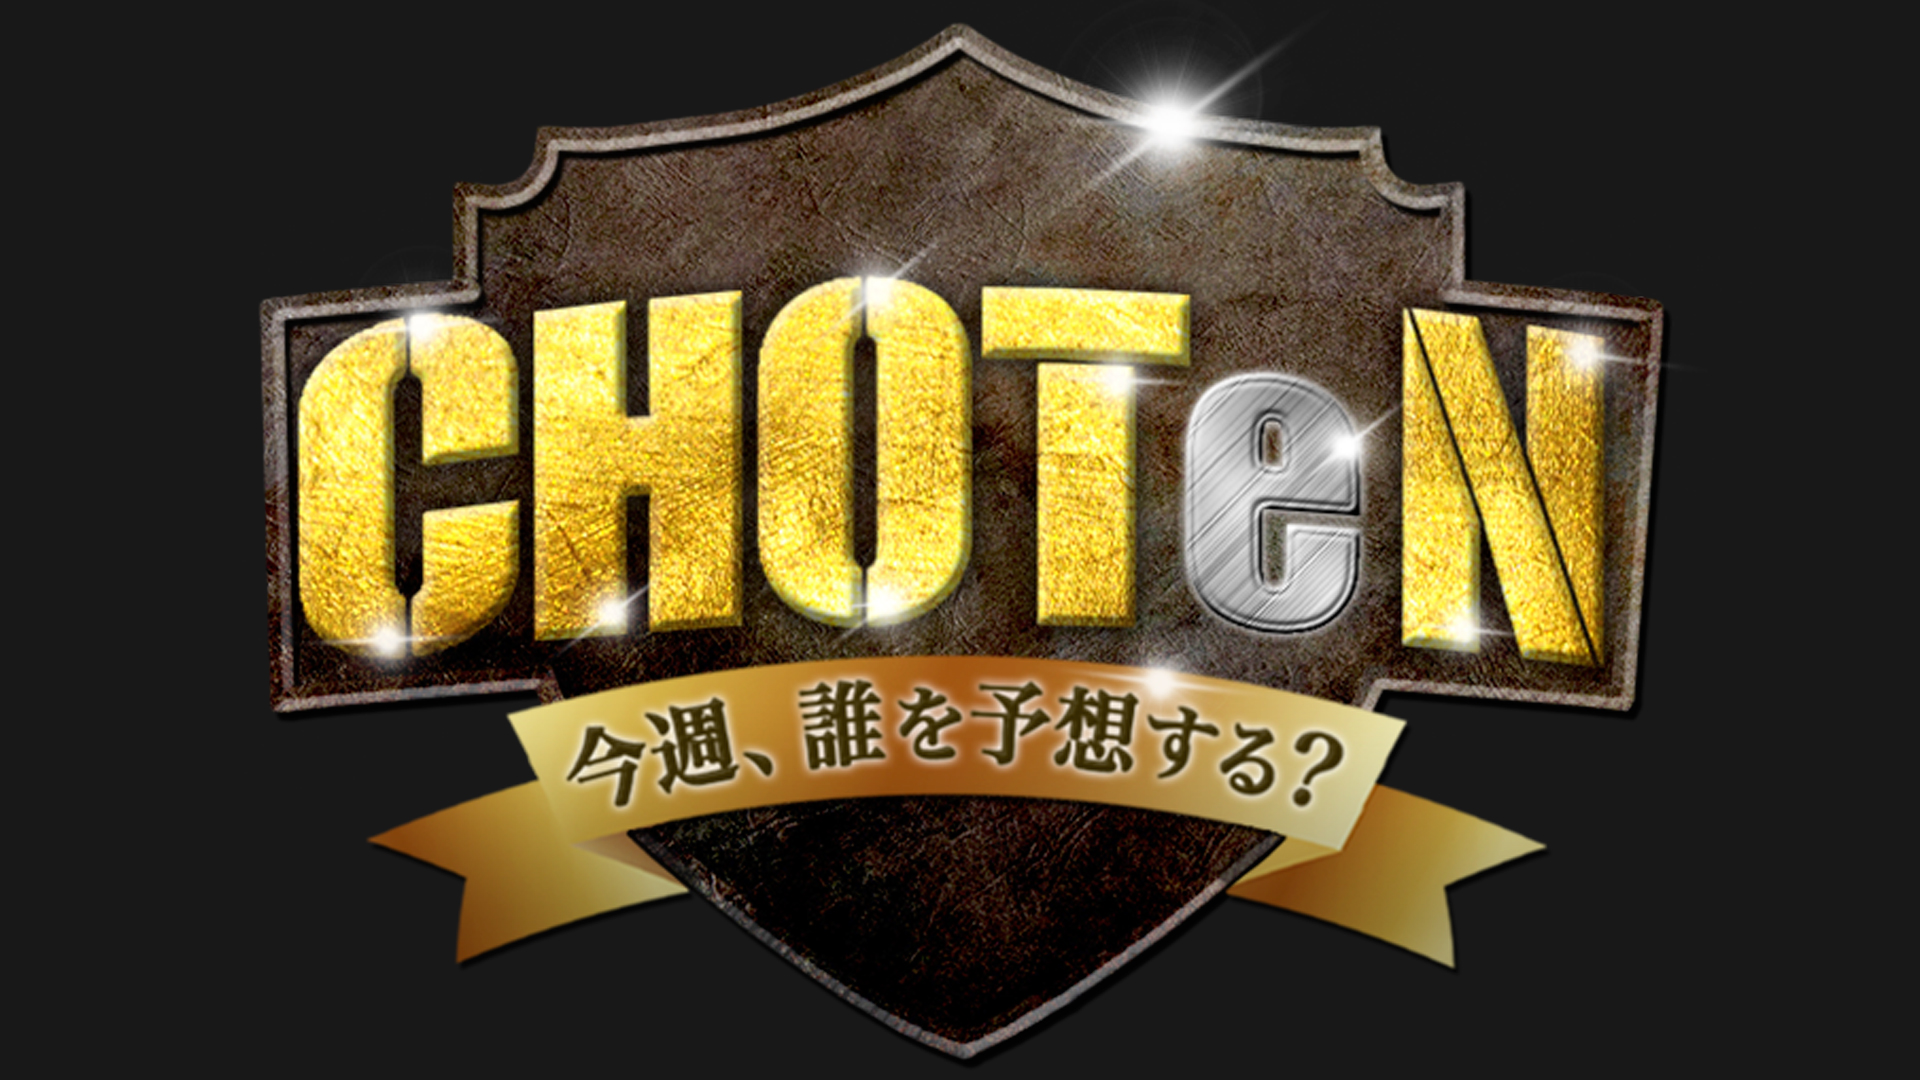 出演情報 – Kota,Takelyが『X-MOMENT Presents CHOTeN 〜今週、誰を予想する？〜』に出演